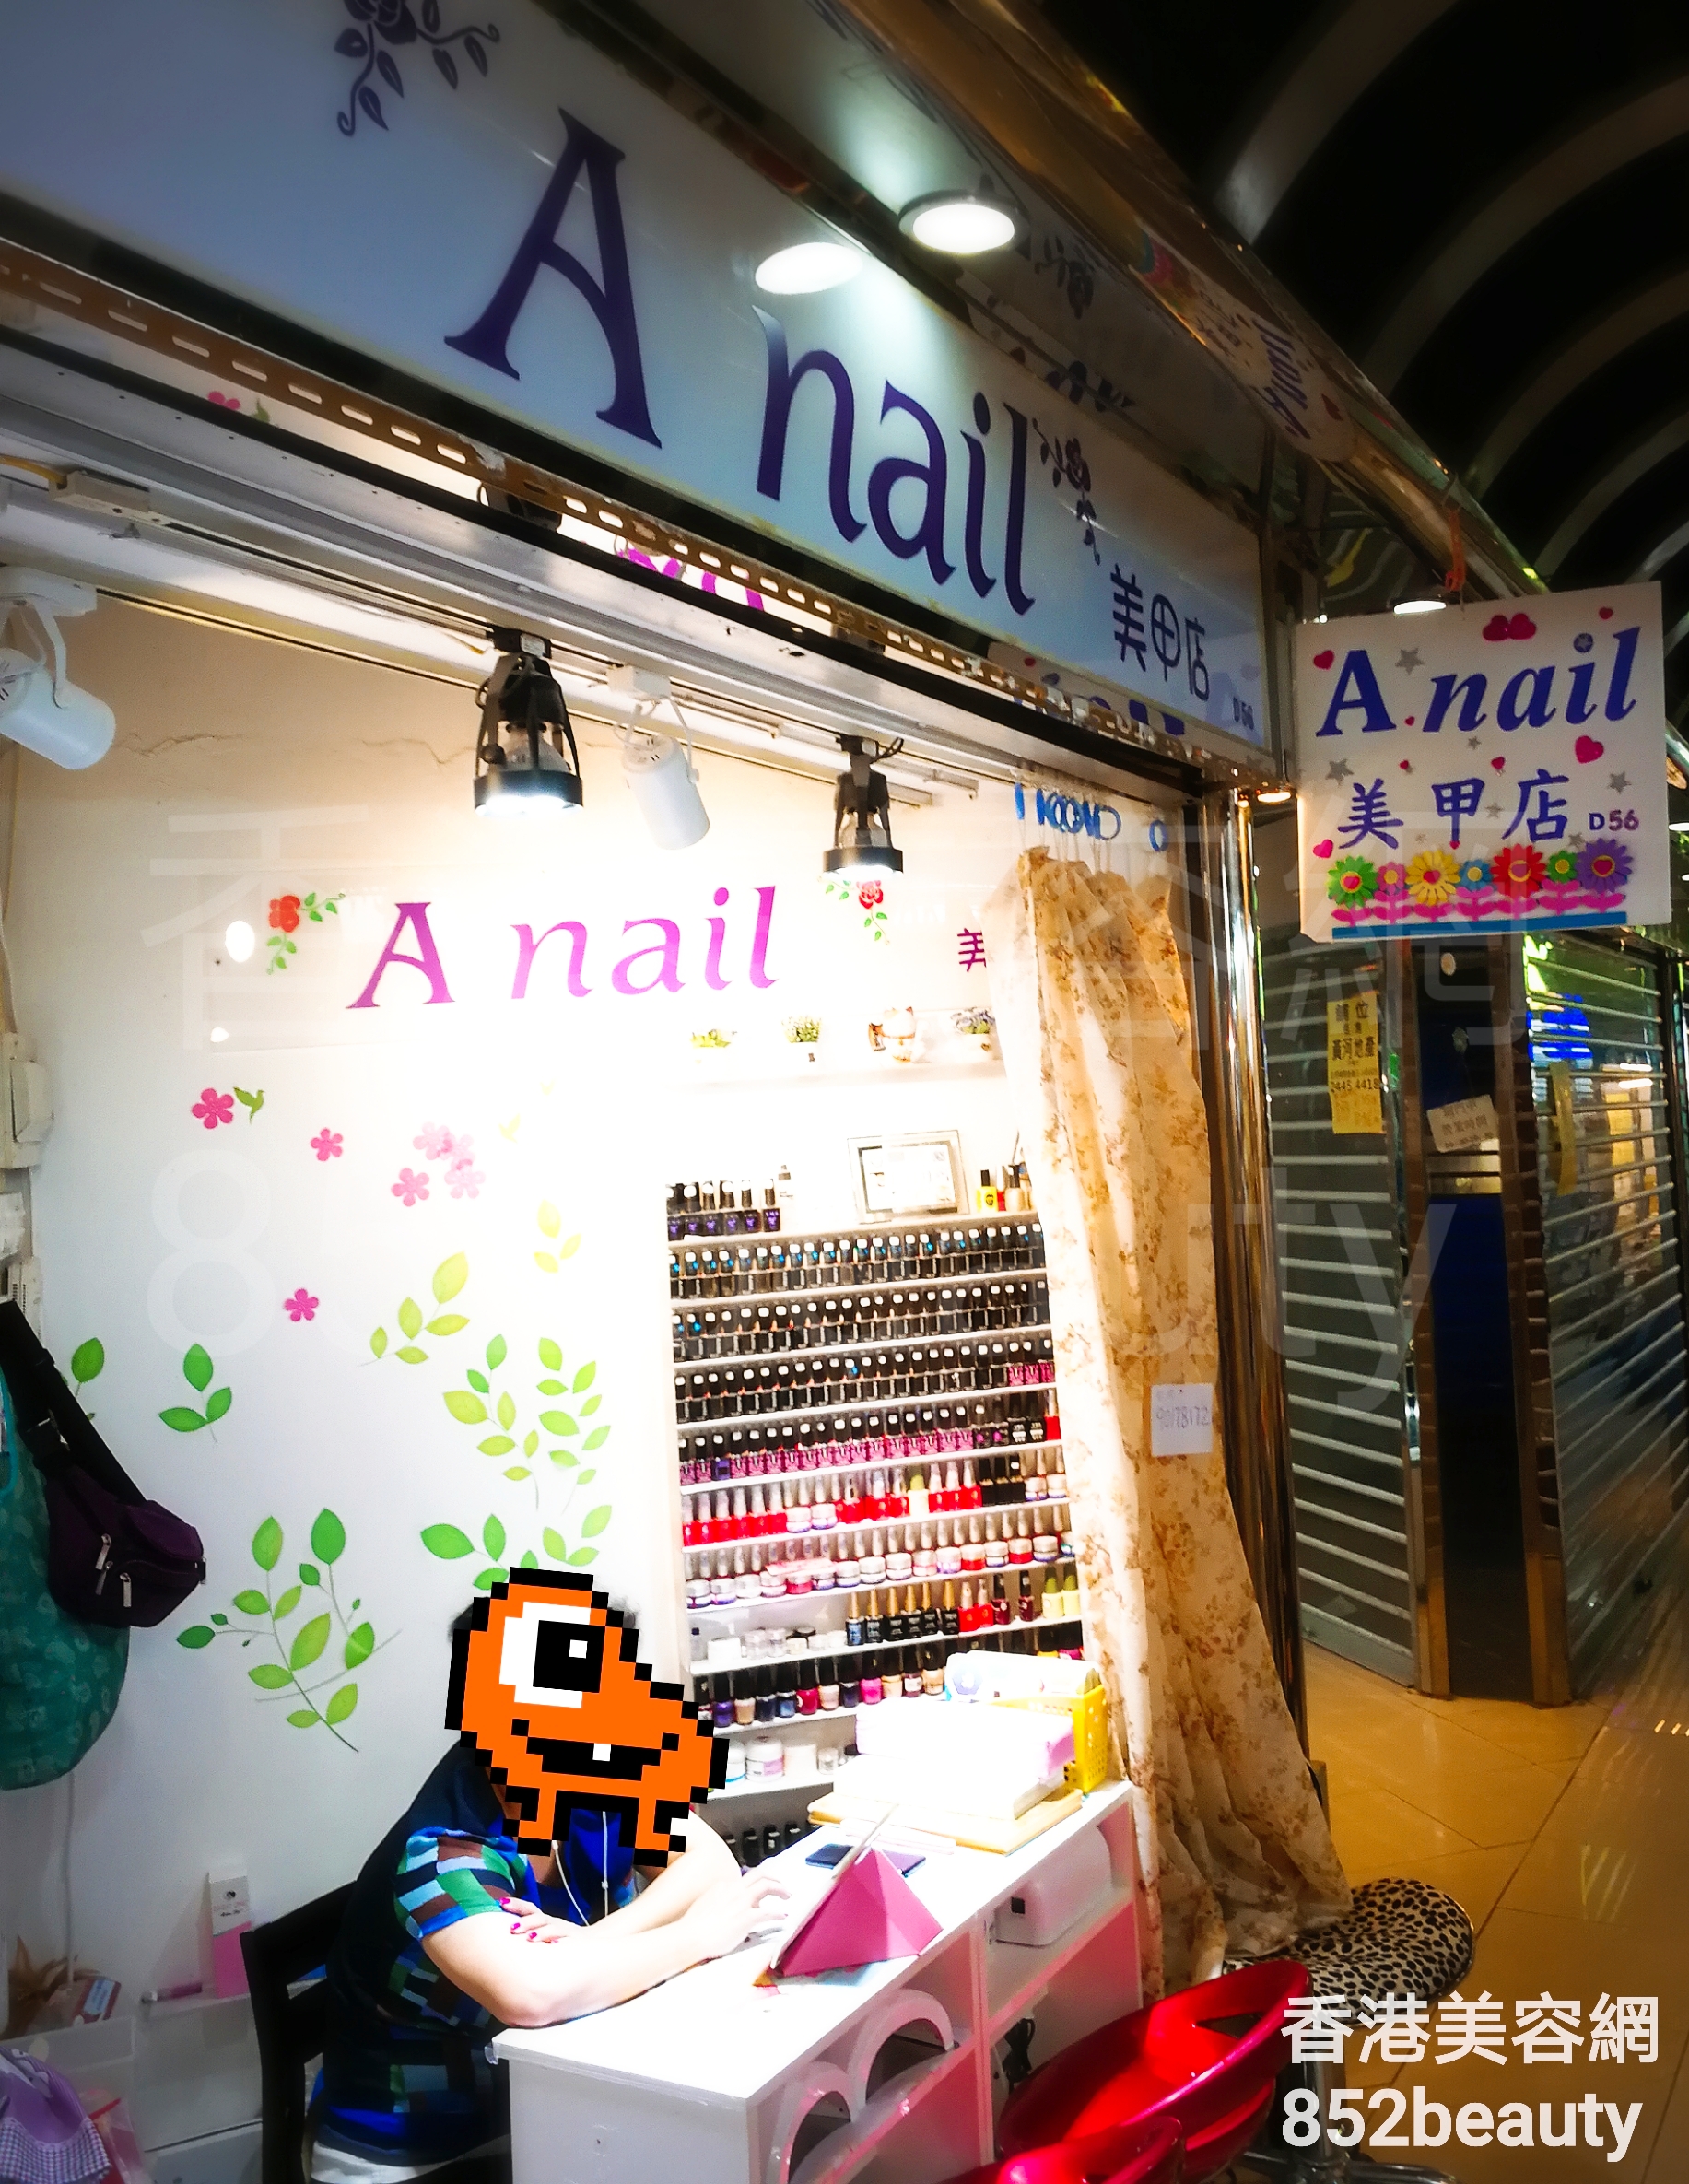 美甲: A nail 美甲店